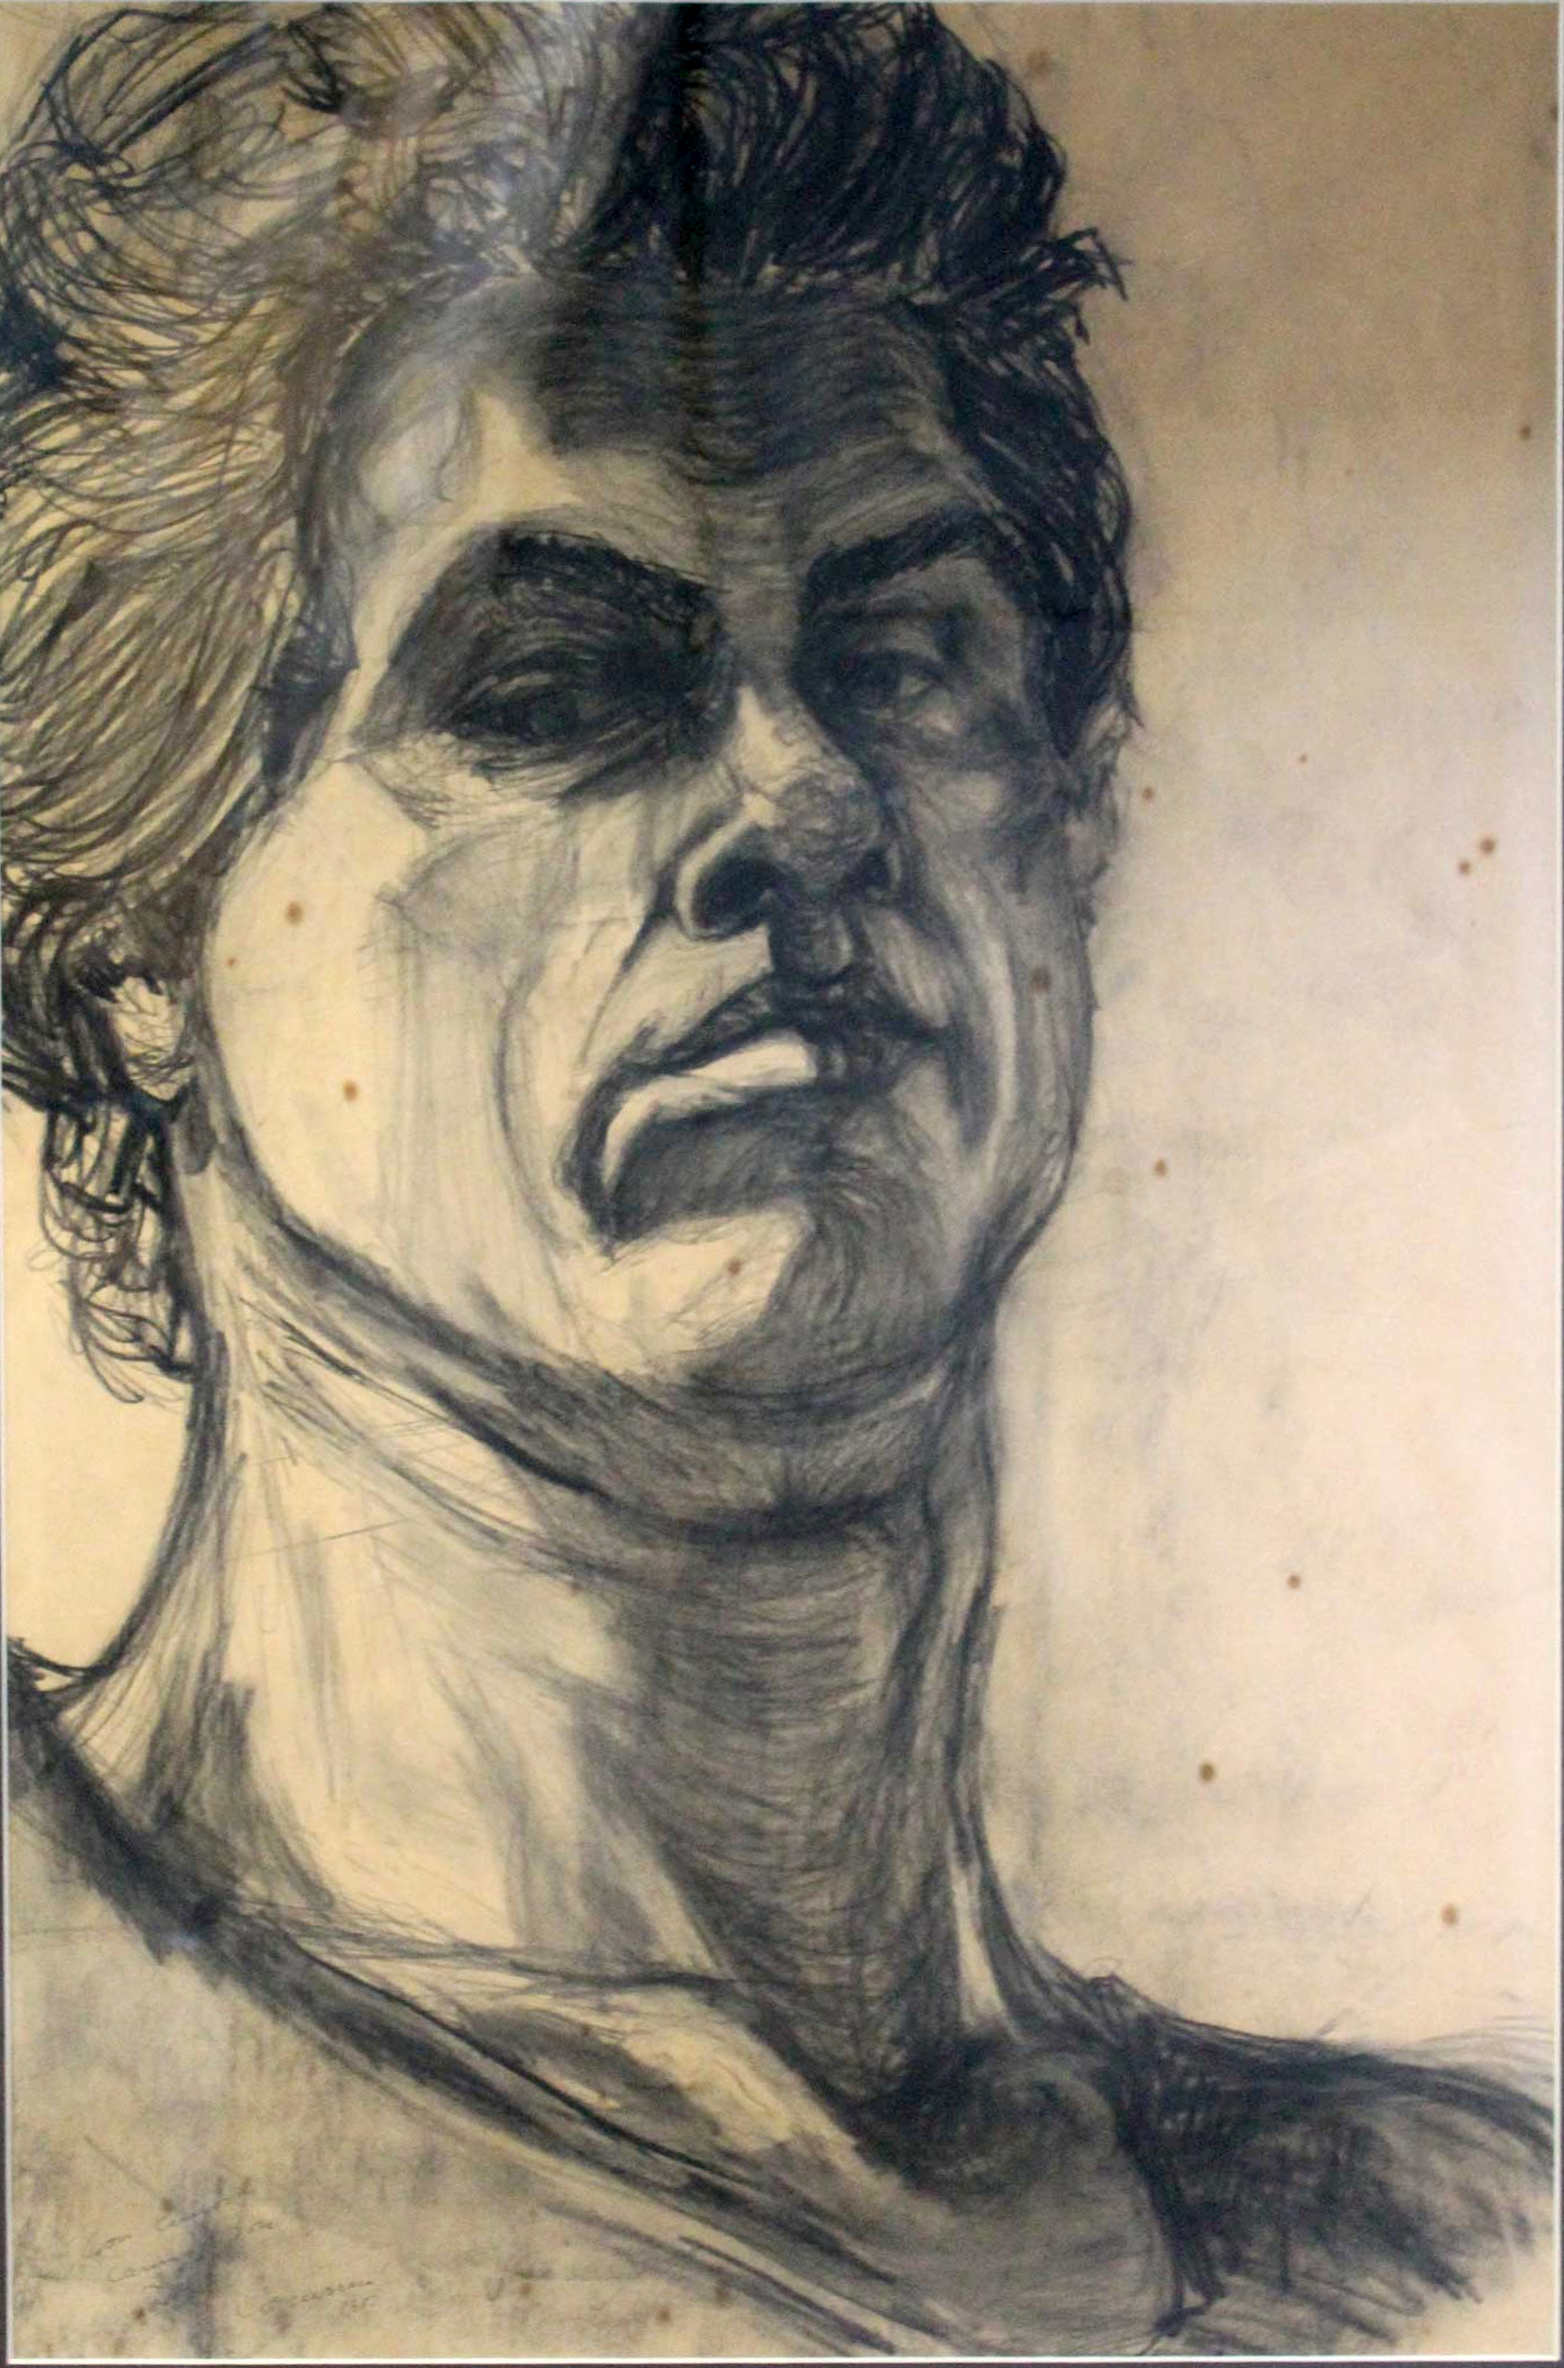 img-galeria-quote-Obra titulada “Autorretrato”, técnica utilizada carboncillo, dimensiones: 58 x 53 cms, año 1985.